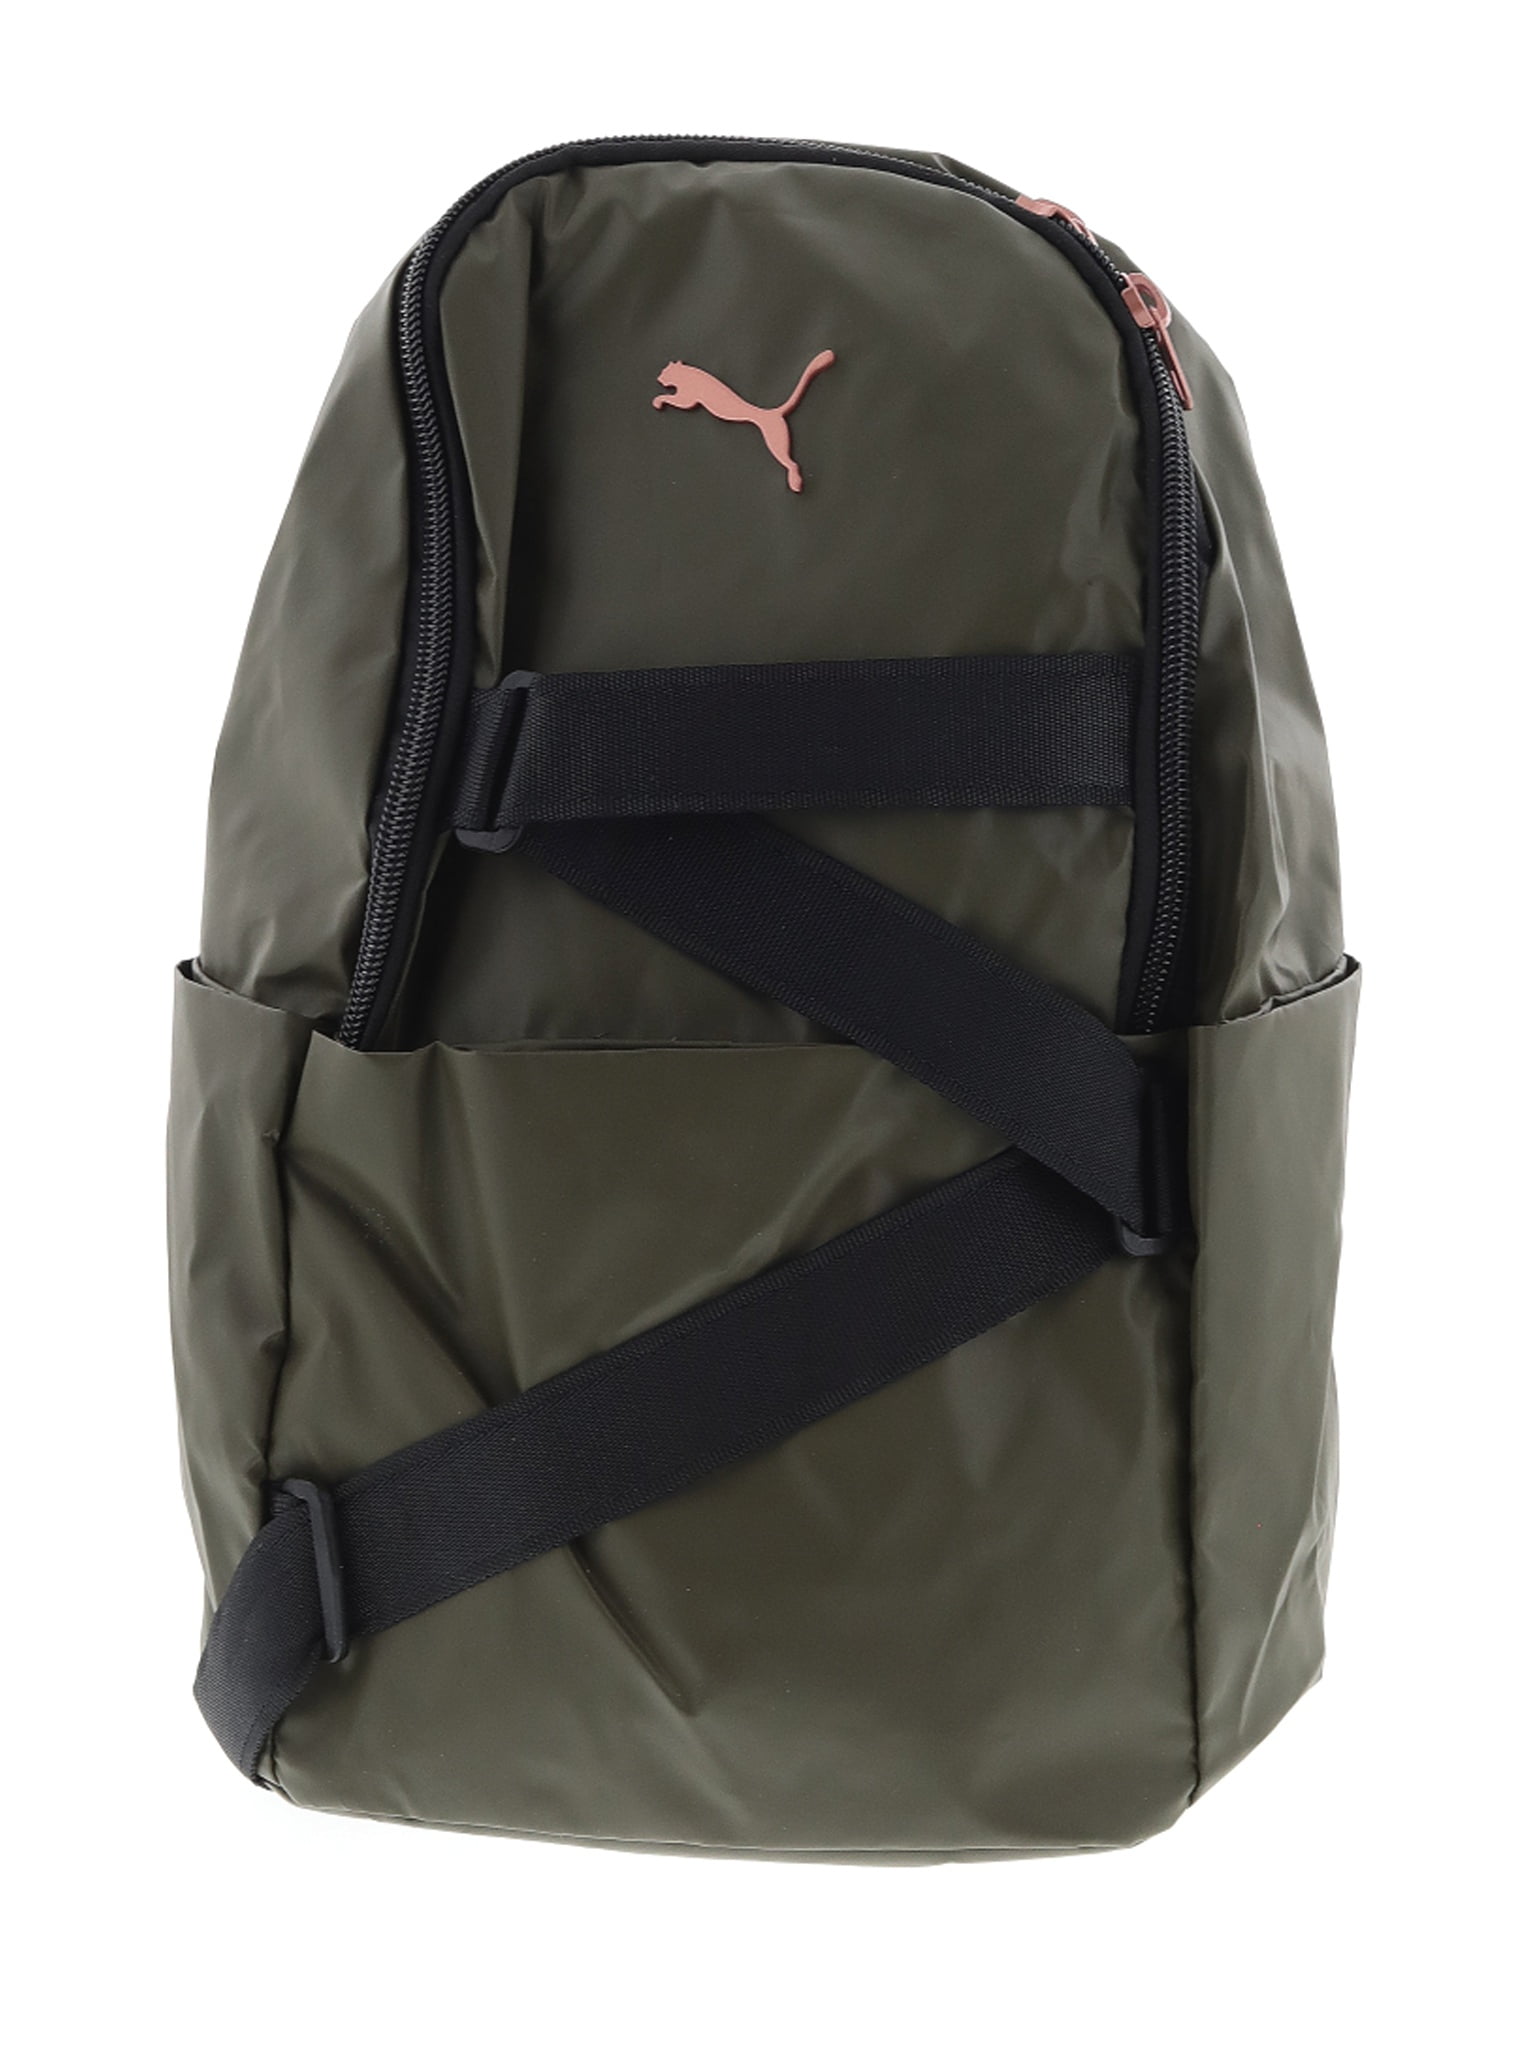 puma backpack walmart